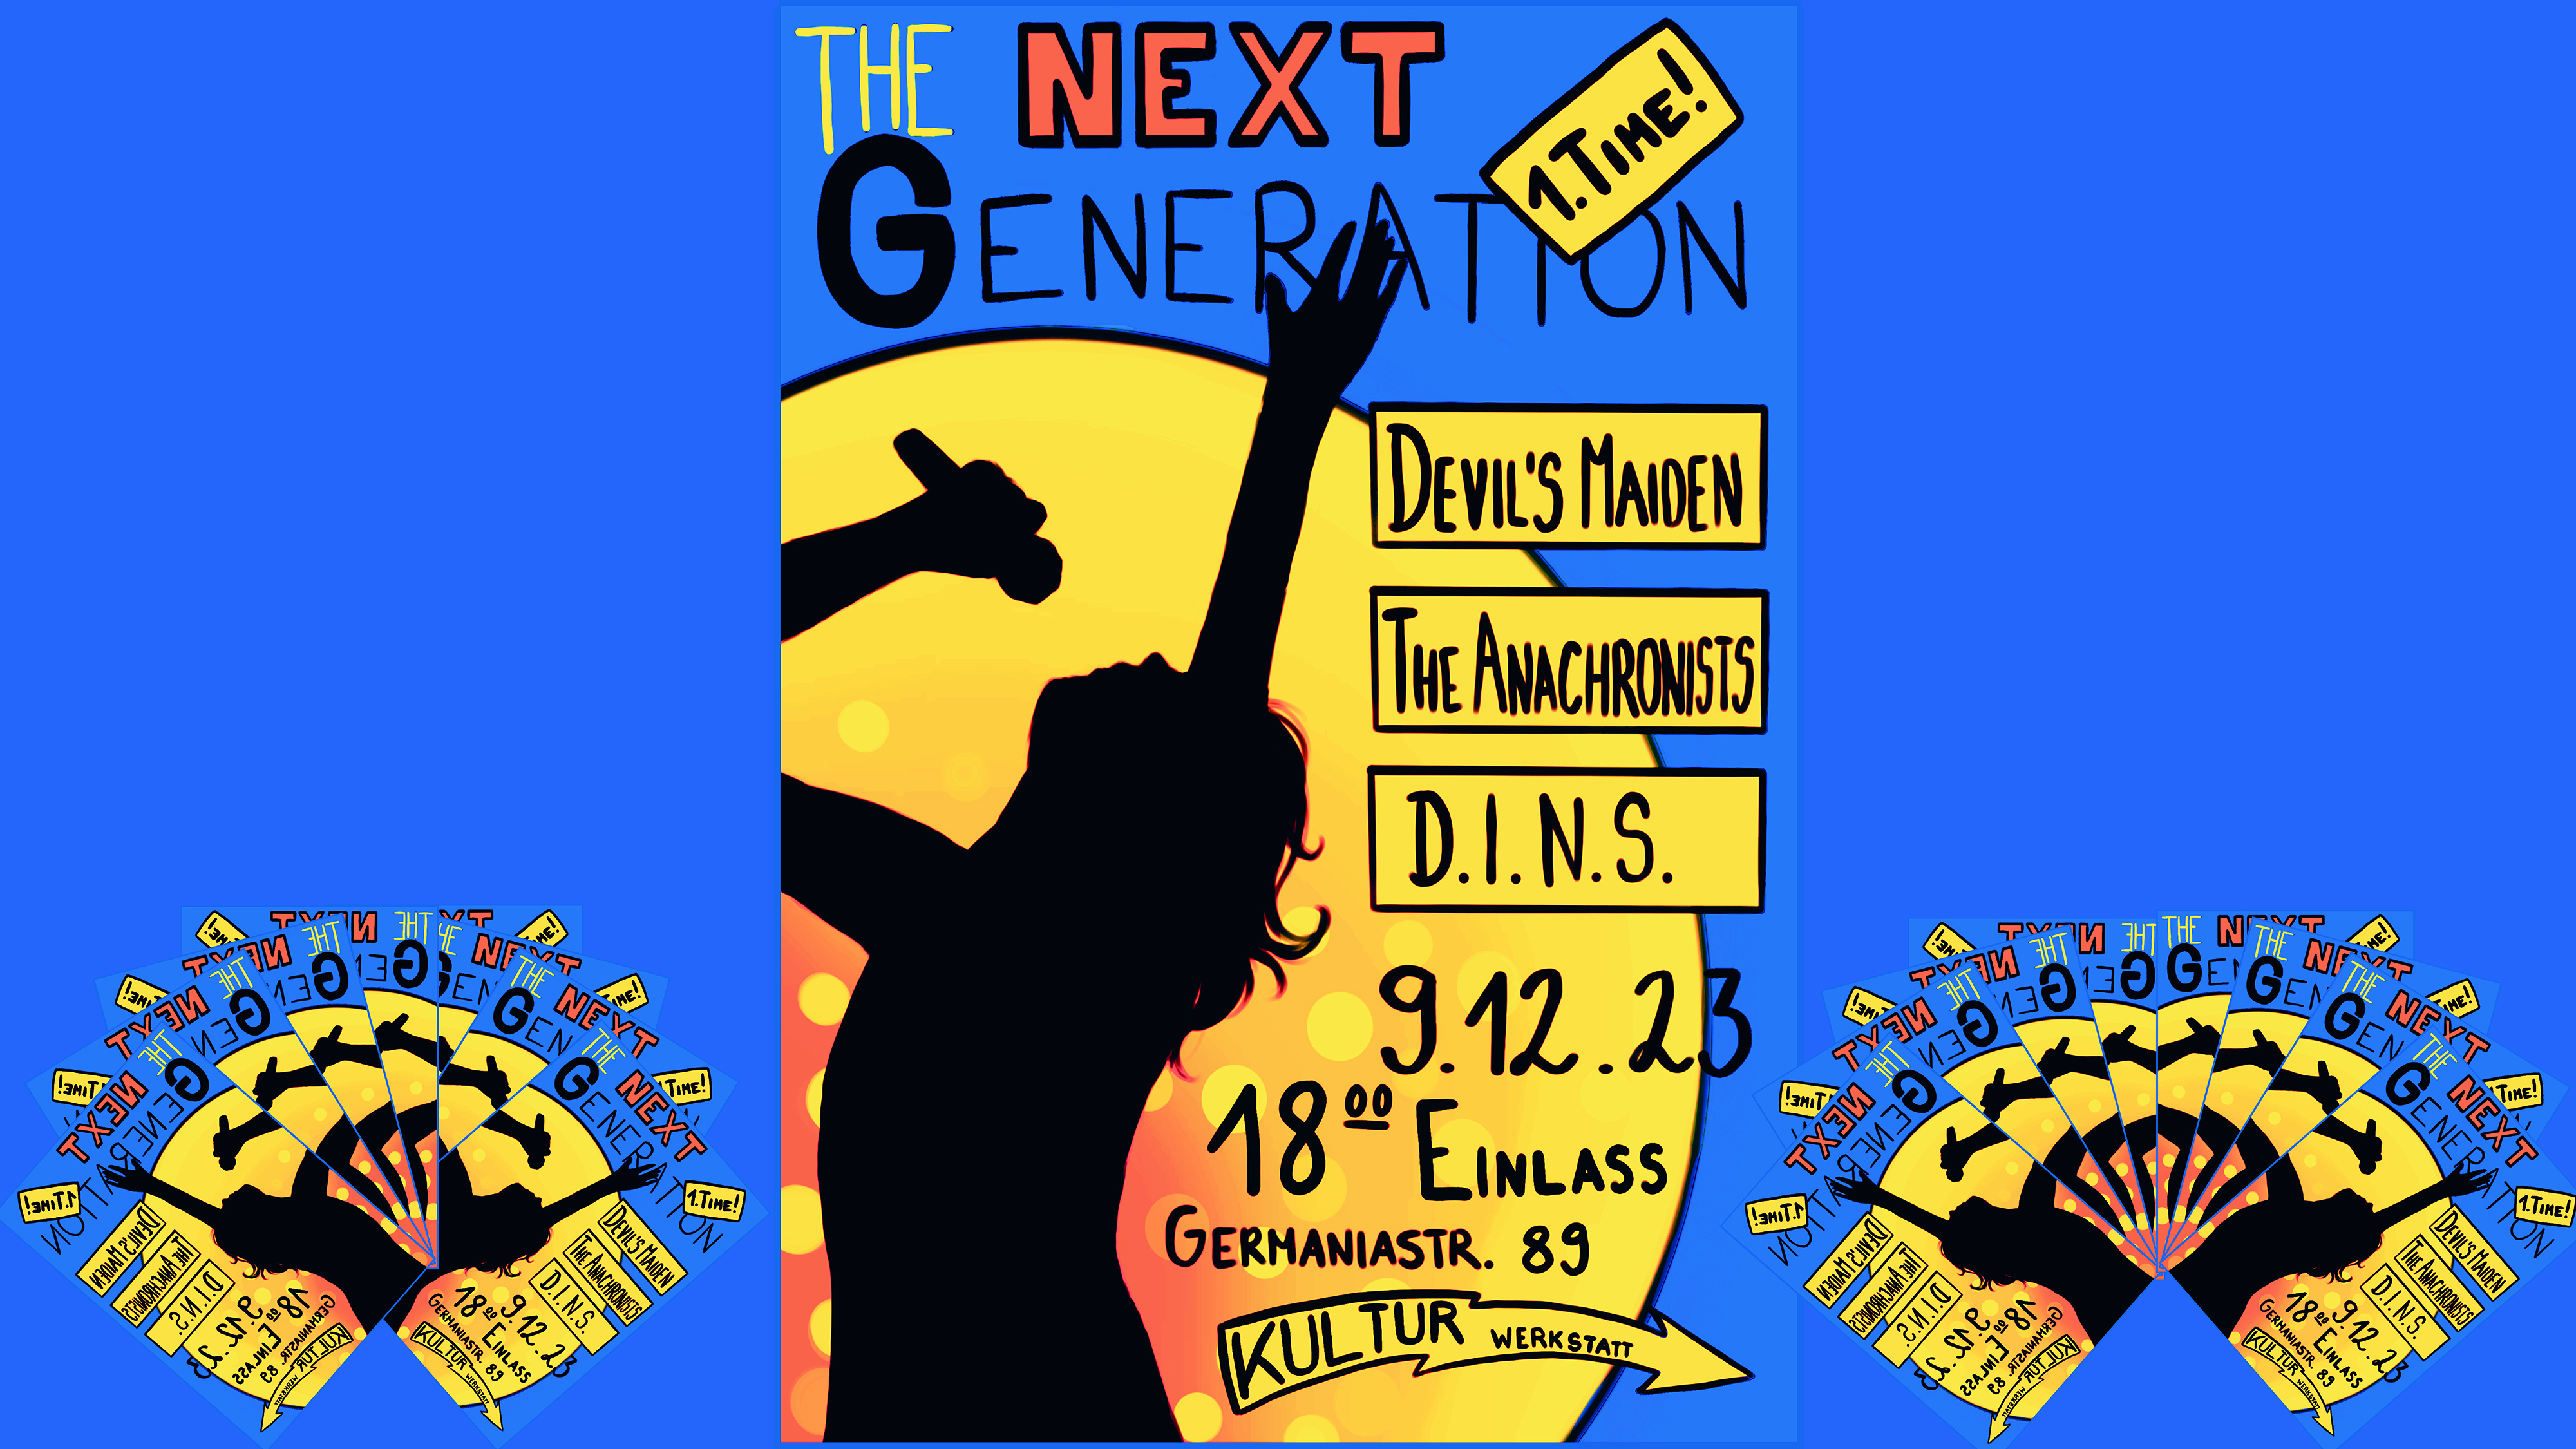 The Next Generation Concert – Part 1.